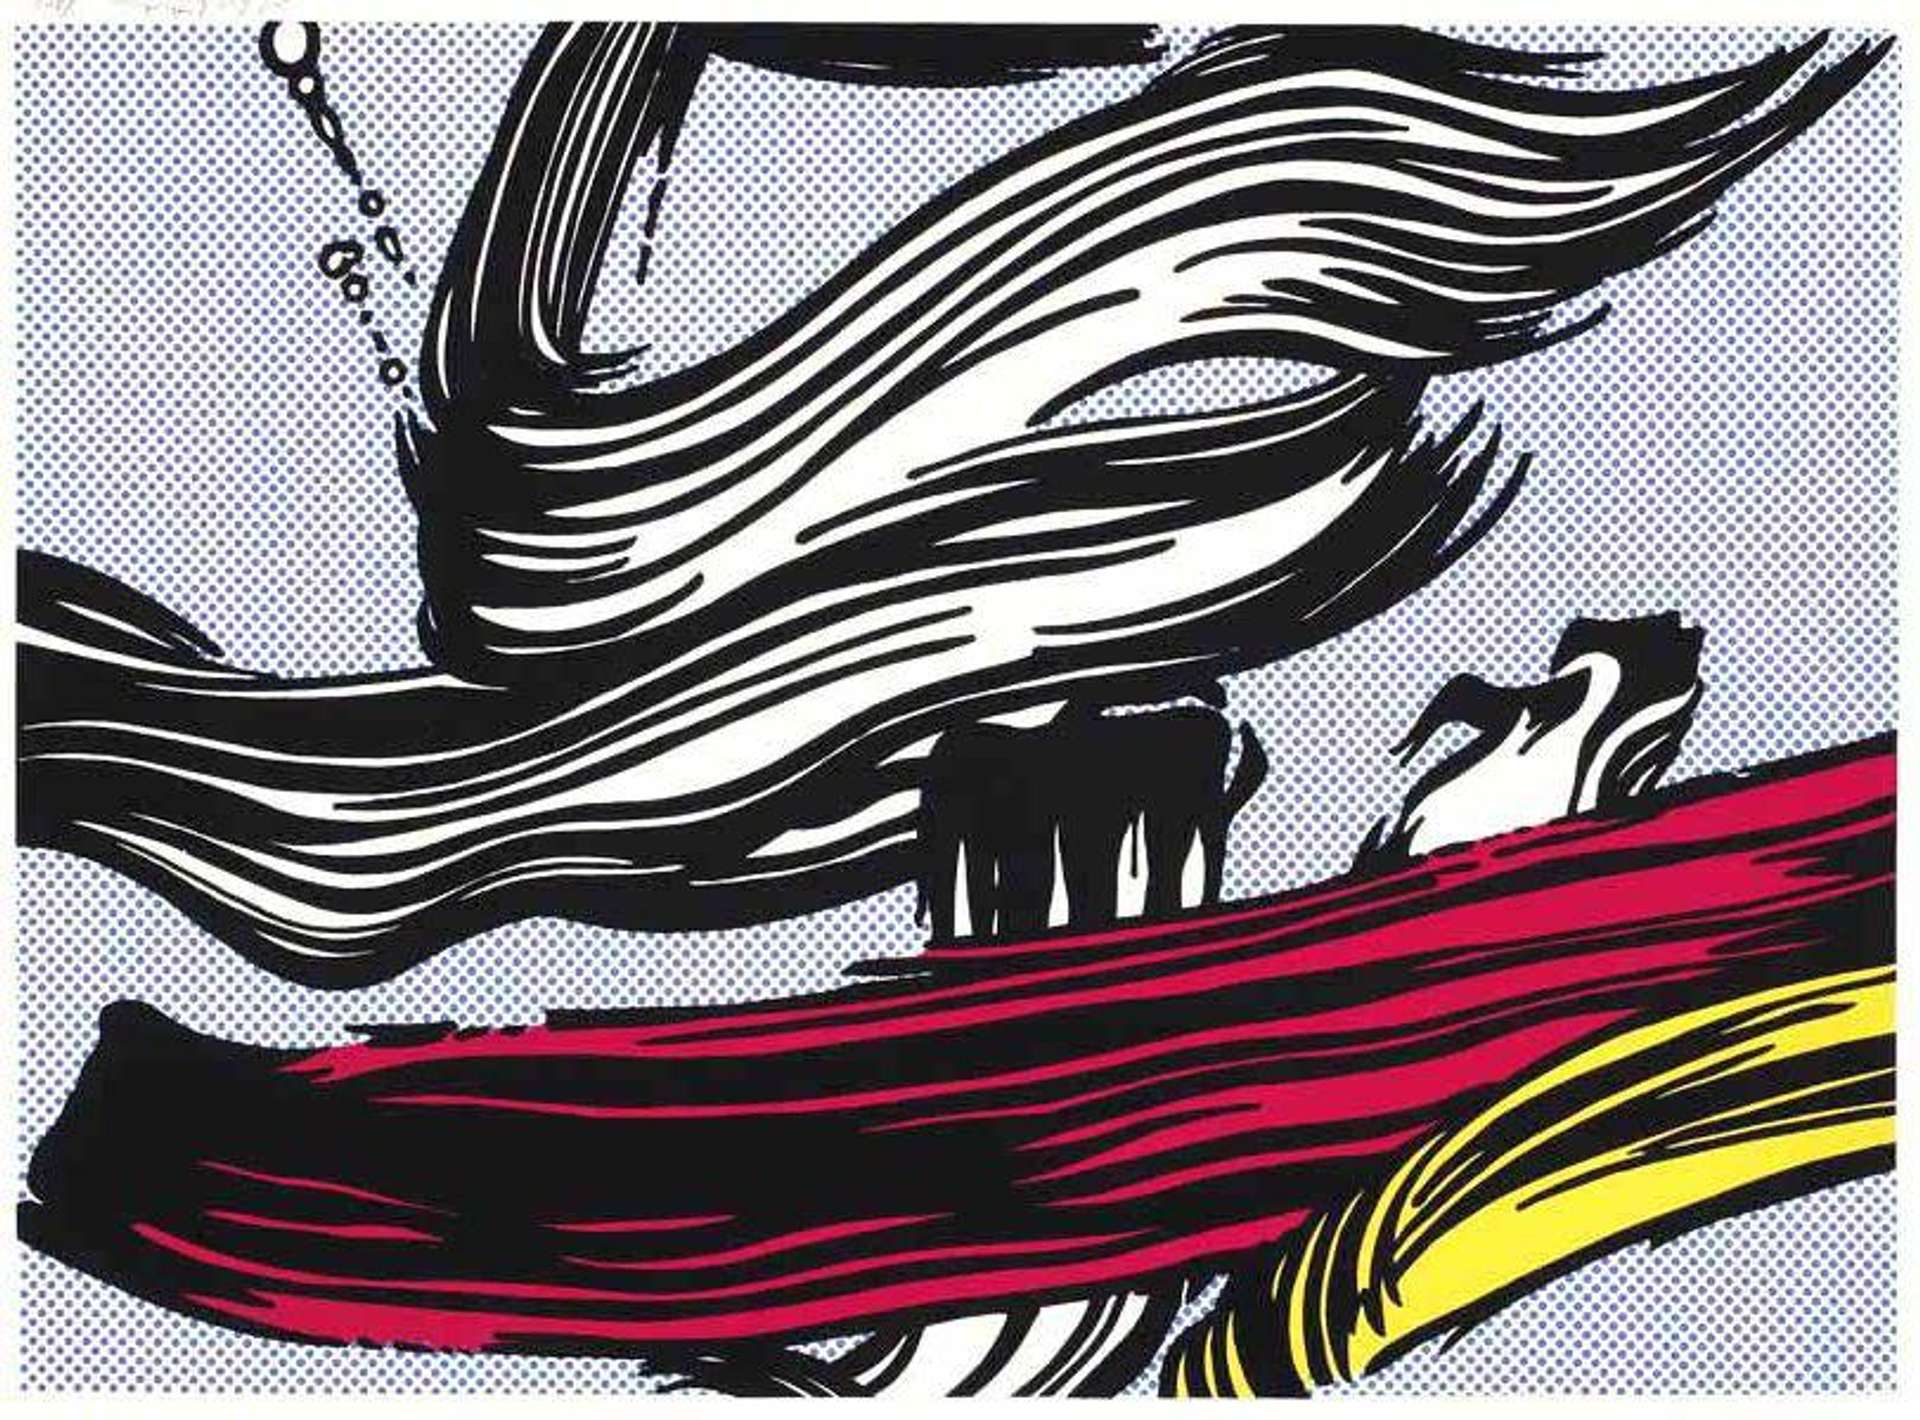 Brushstrokes by Roy Lichtenstein